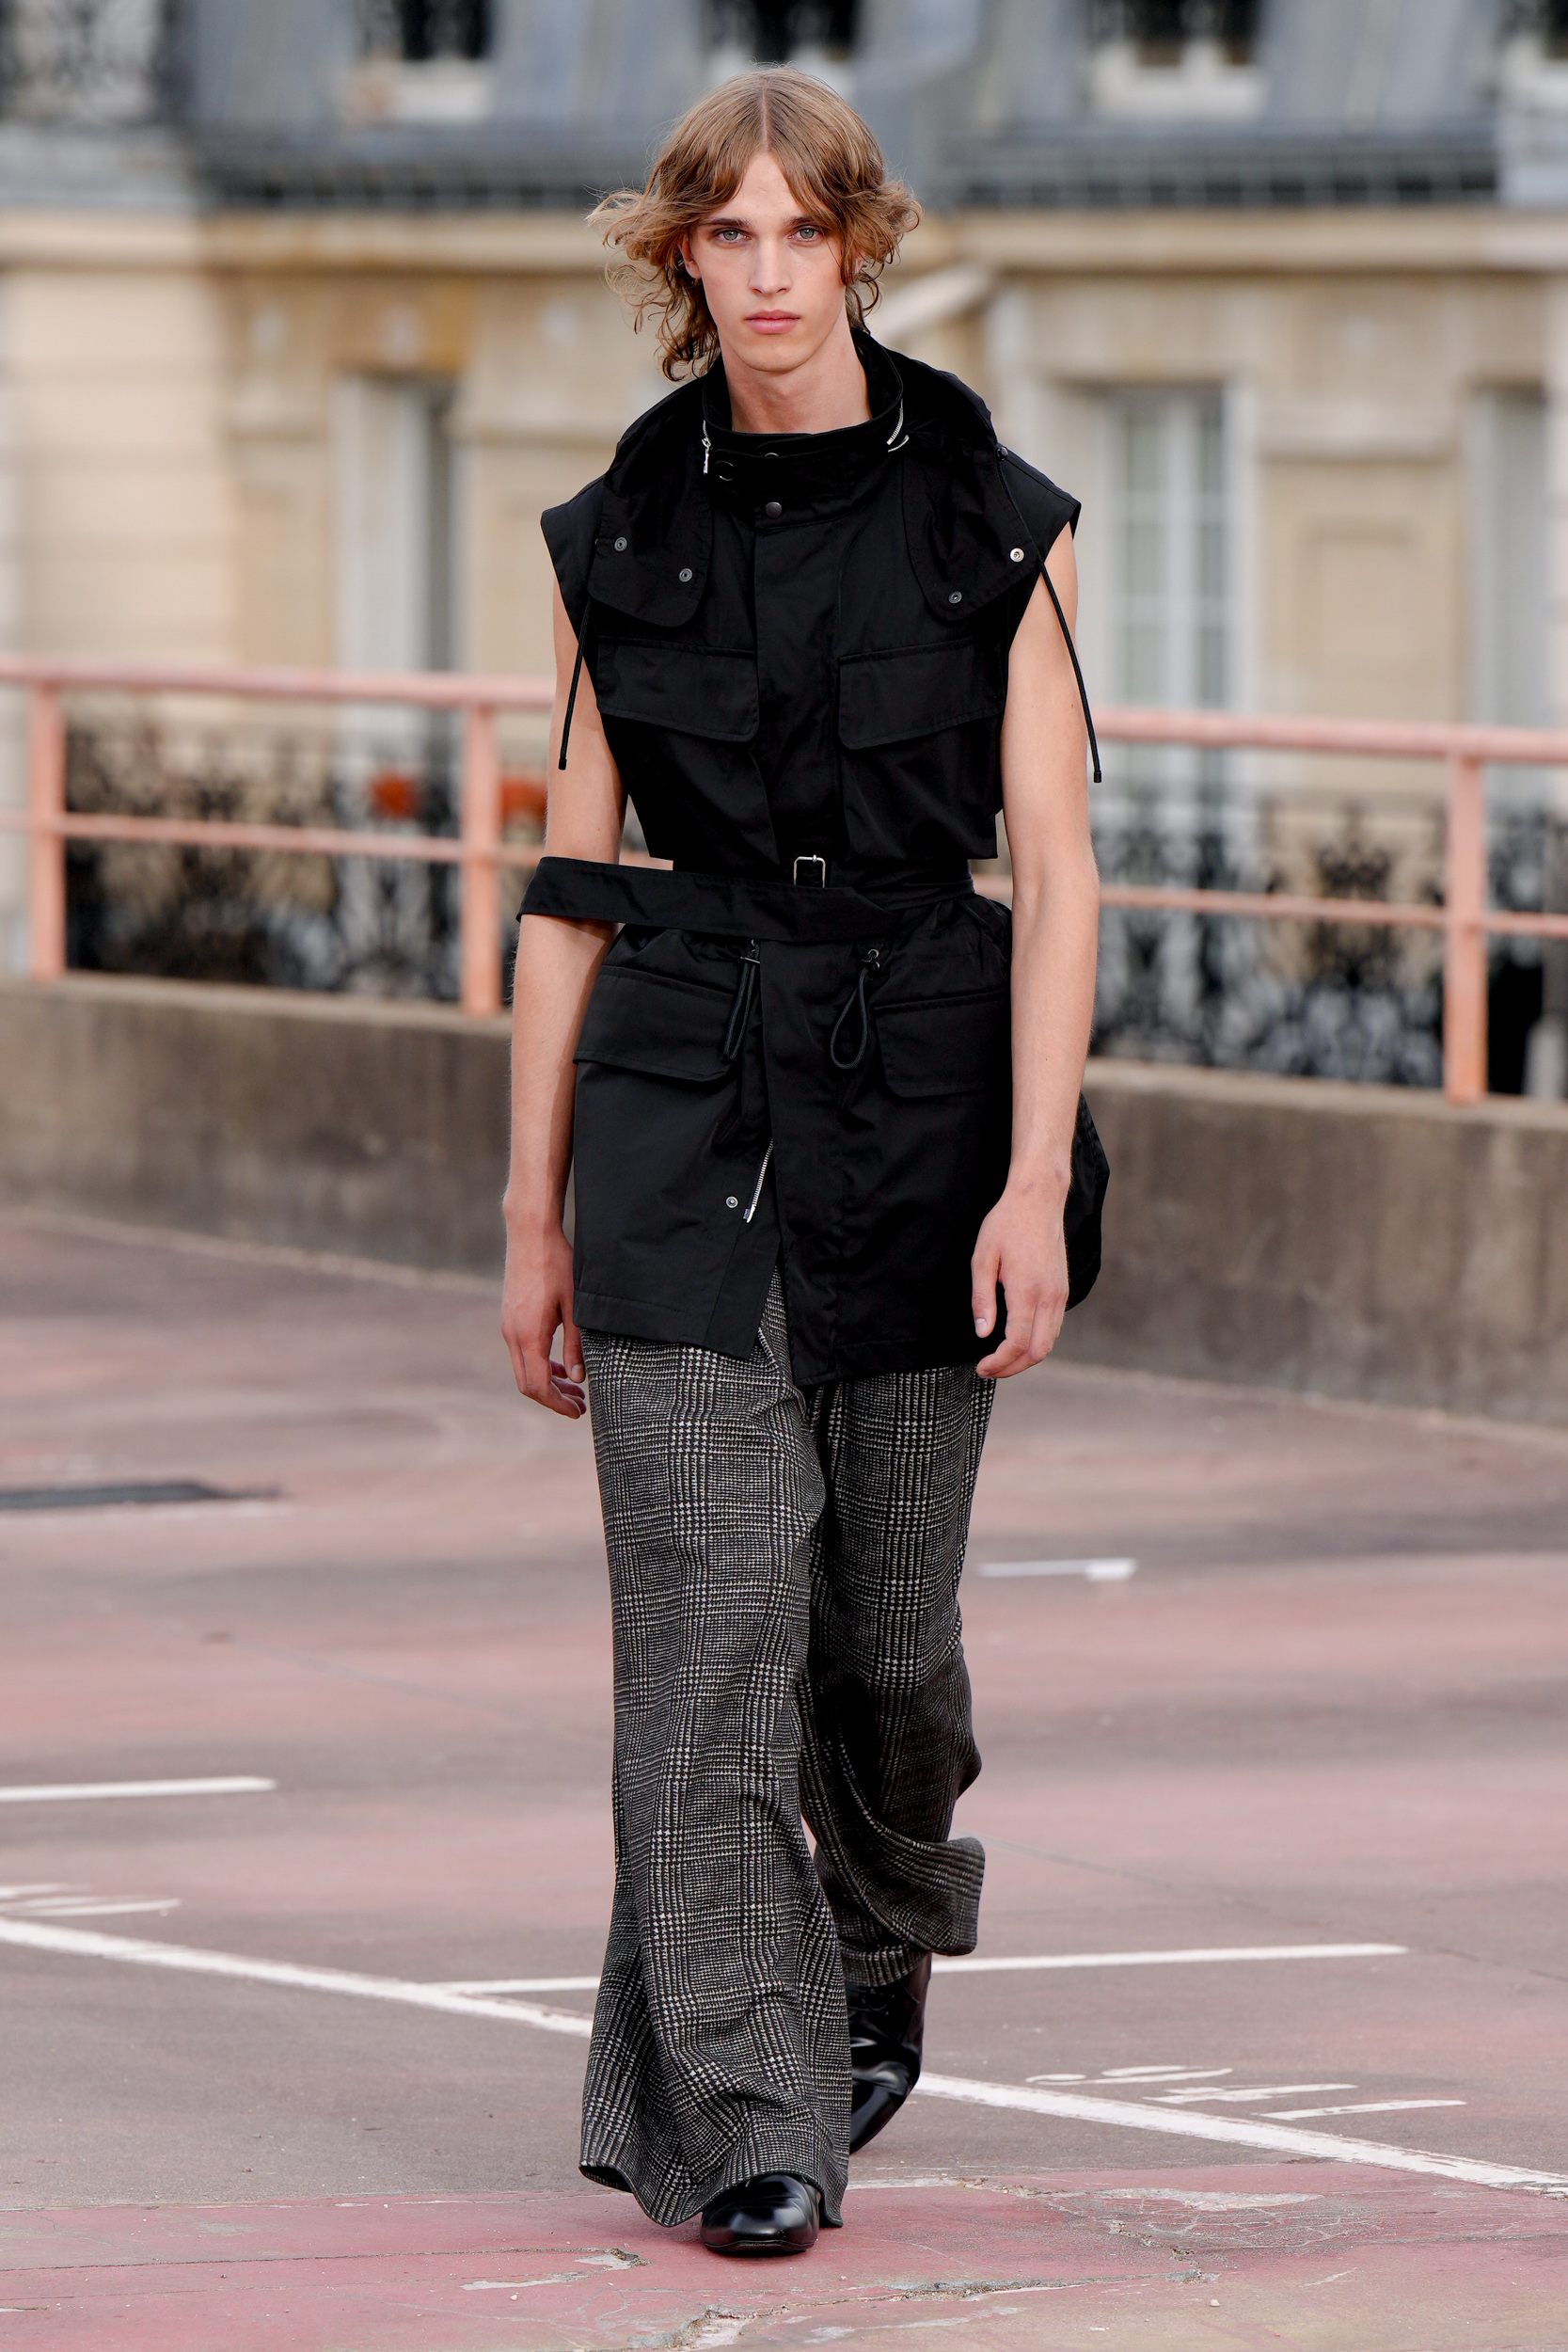 Dries Van Noten Spring 2023 Men's Fashion Show 